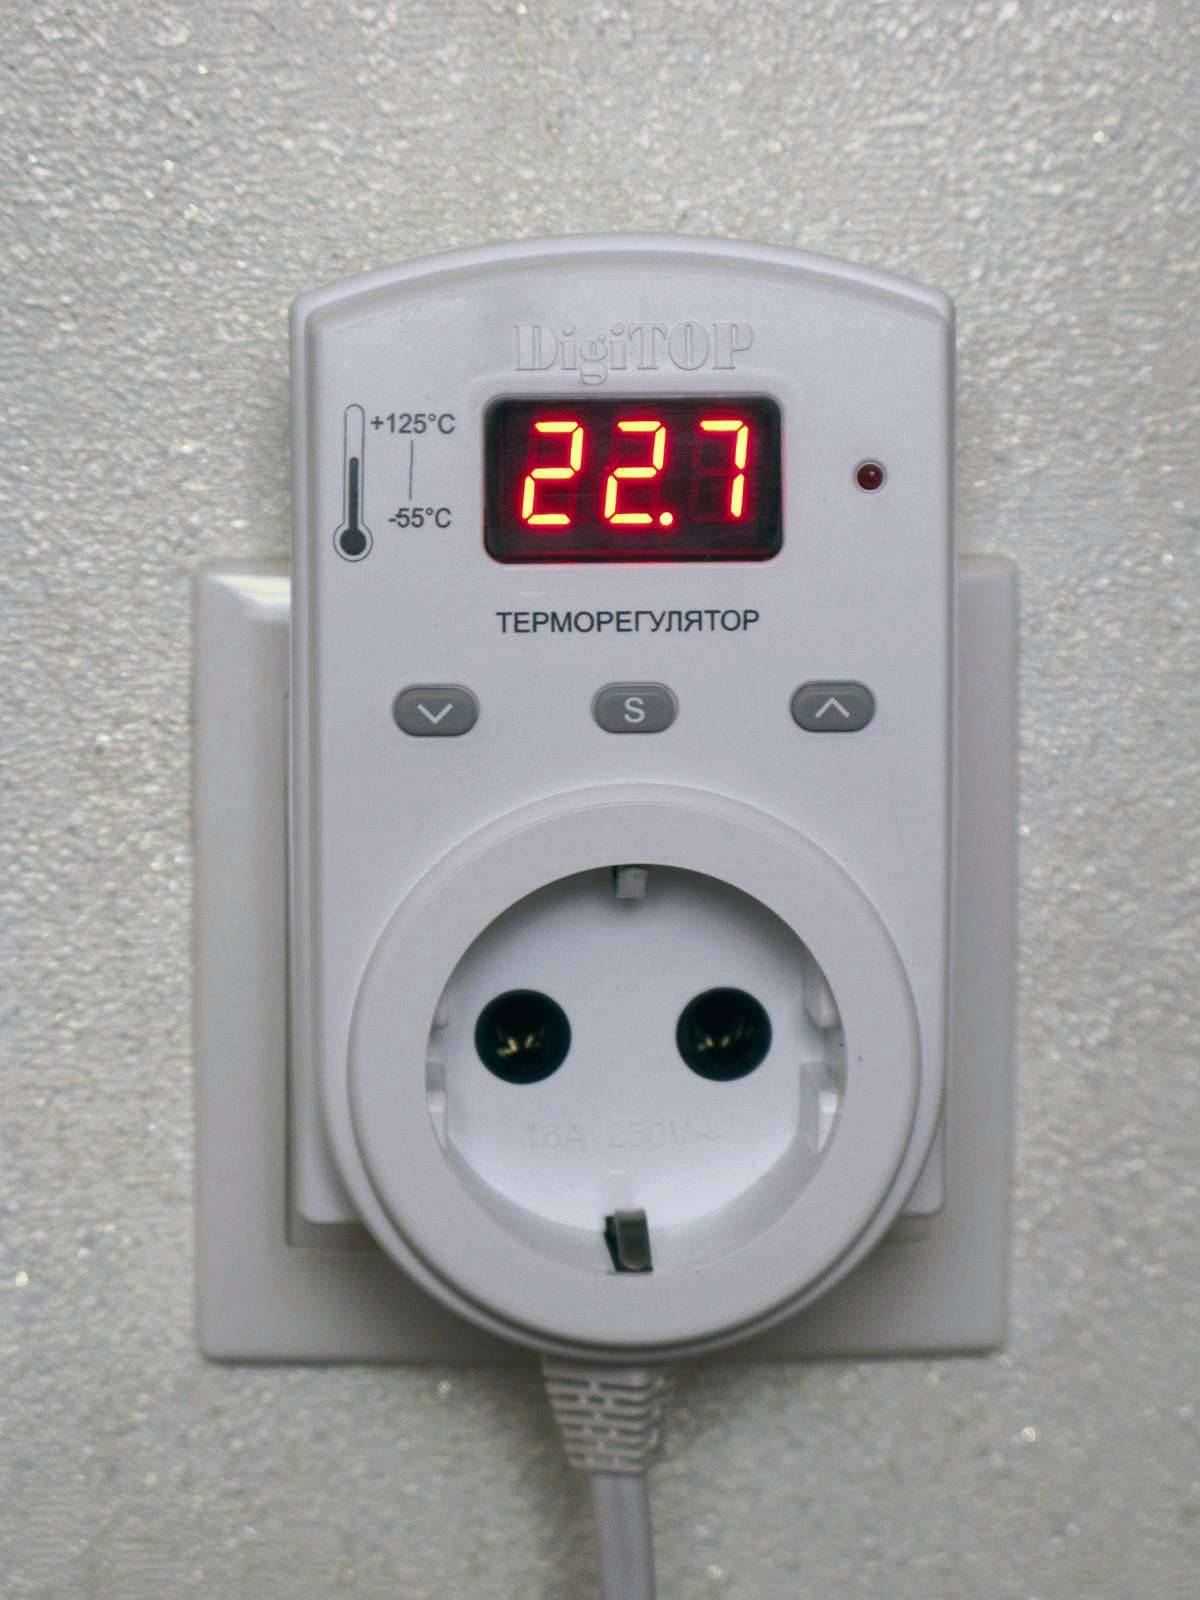 Терморегуляторы с датчиком температуры воздуха для управления обогревательными приборами и системами